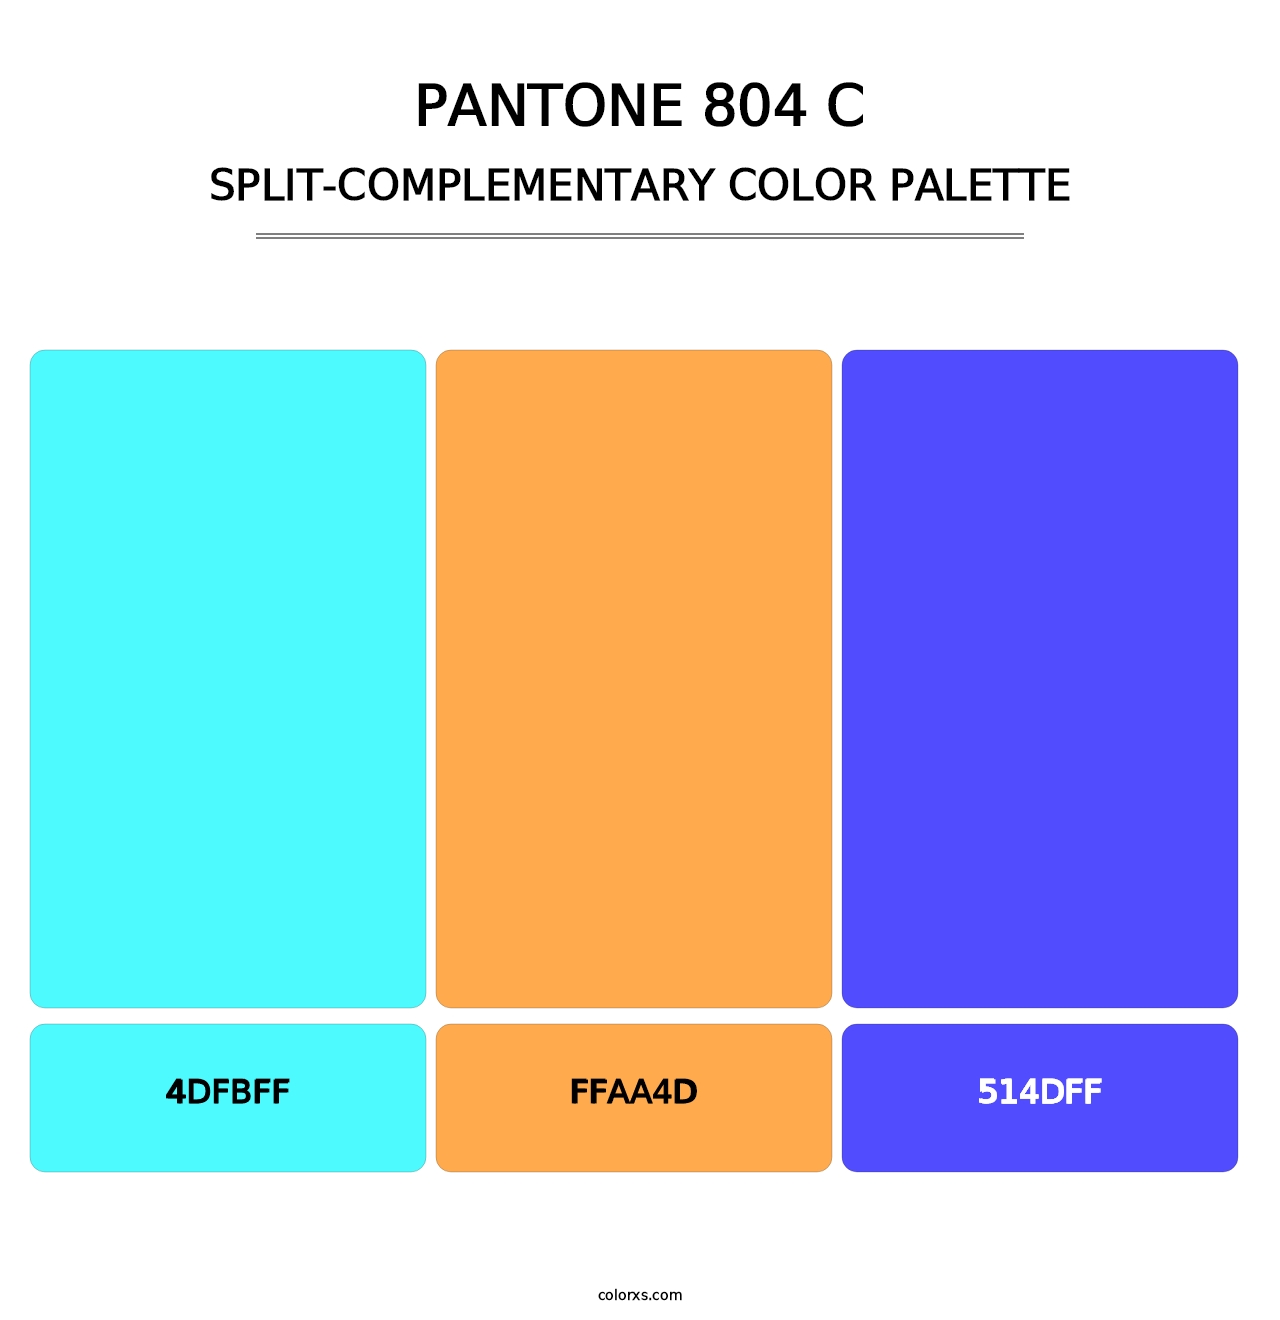 PANTONE 804 C - Split-Complementary Color Palette